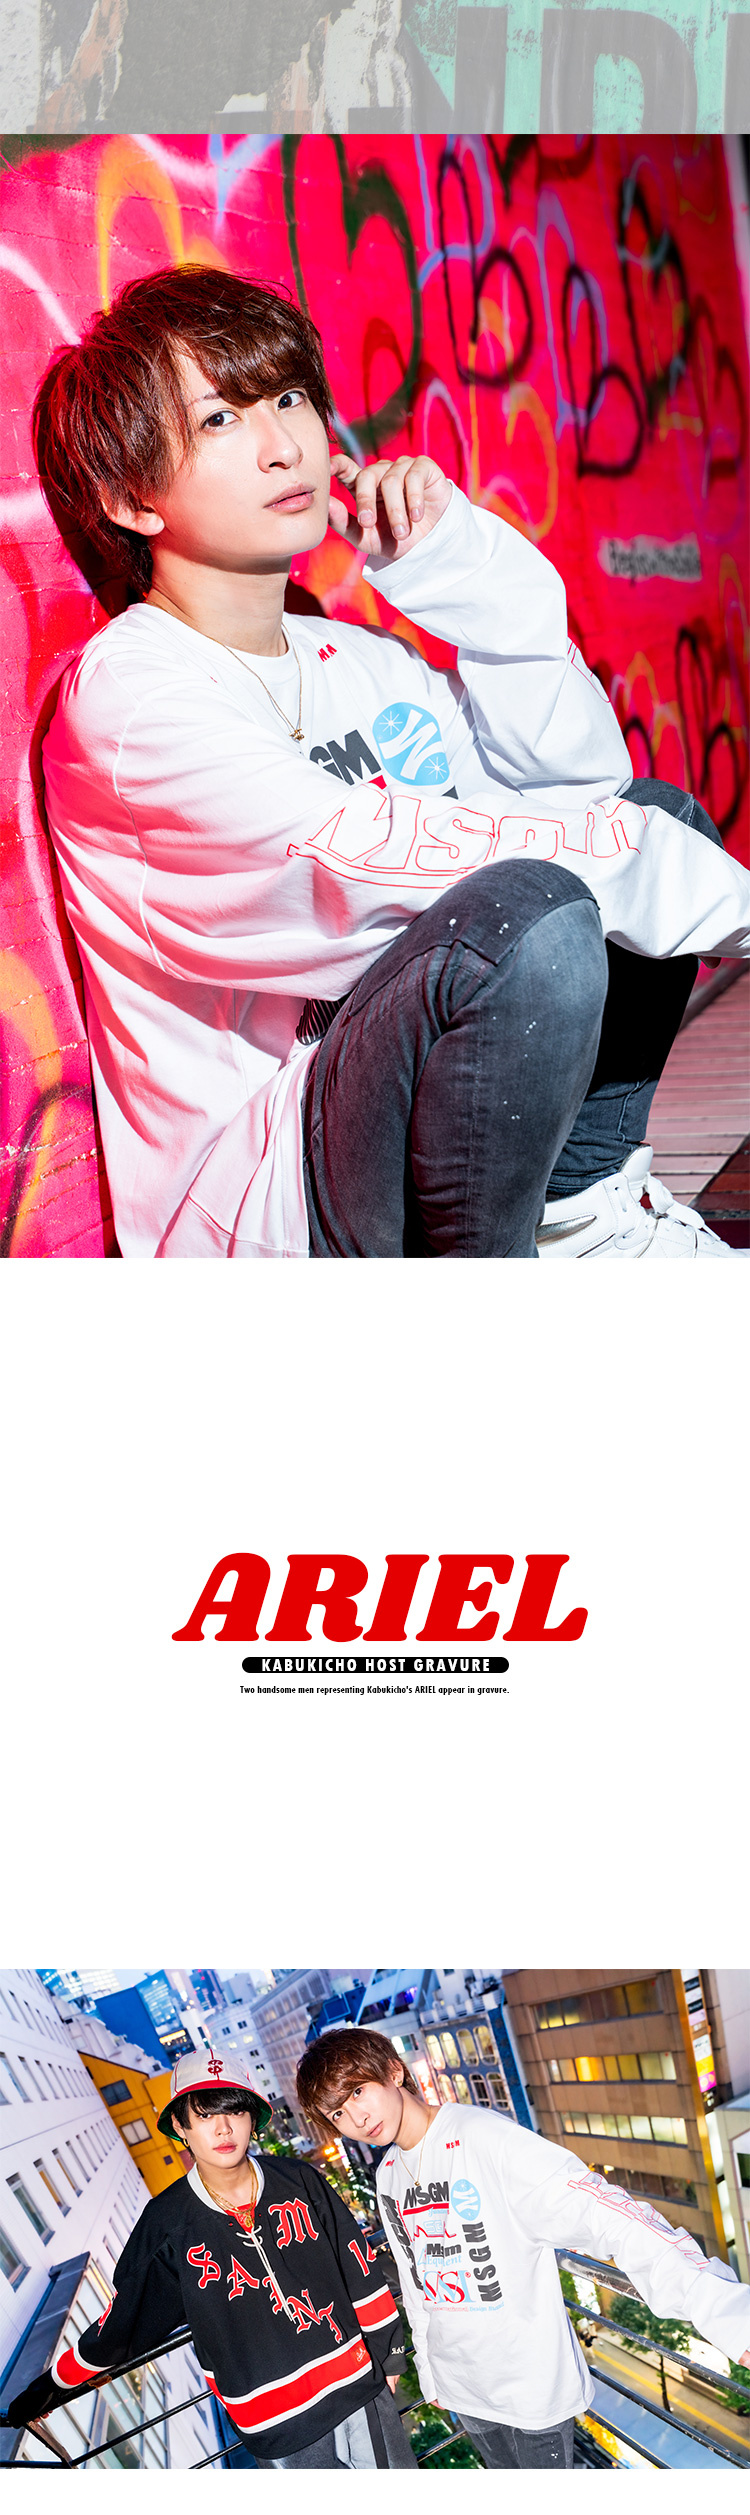 『ARIEL』を代表するイケメン2人組がグラビアに登場!!